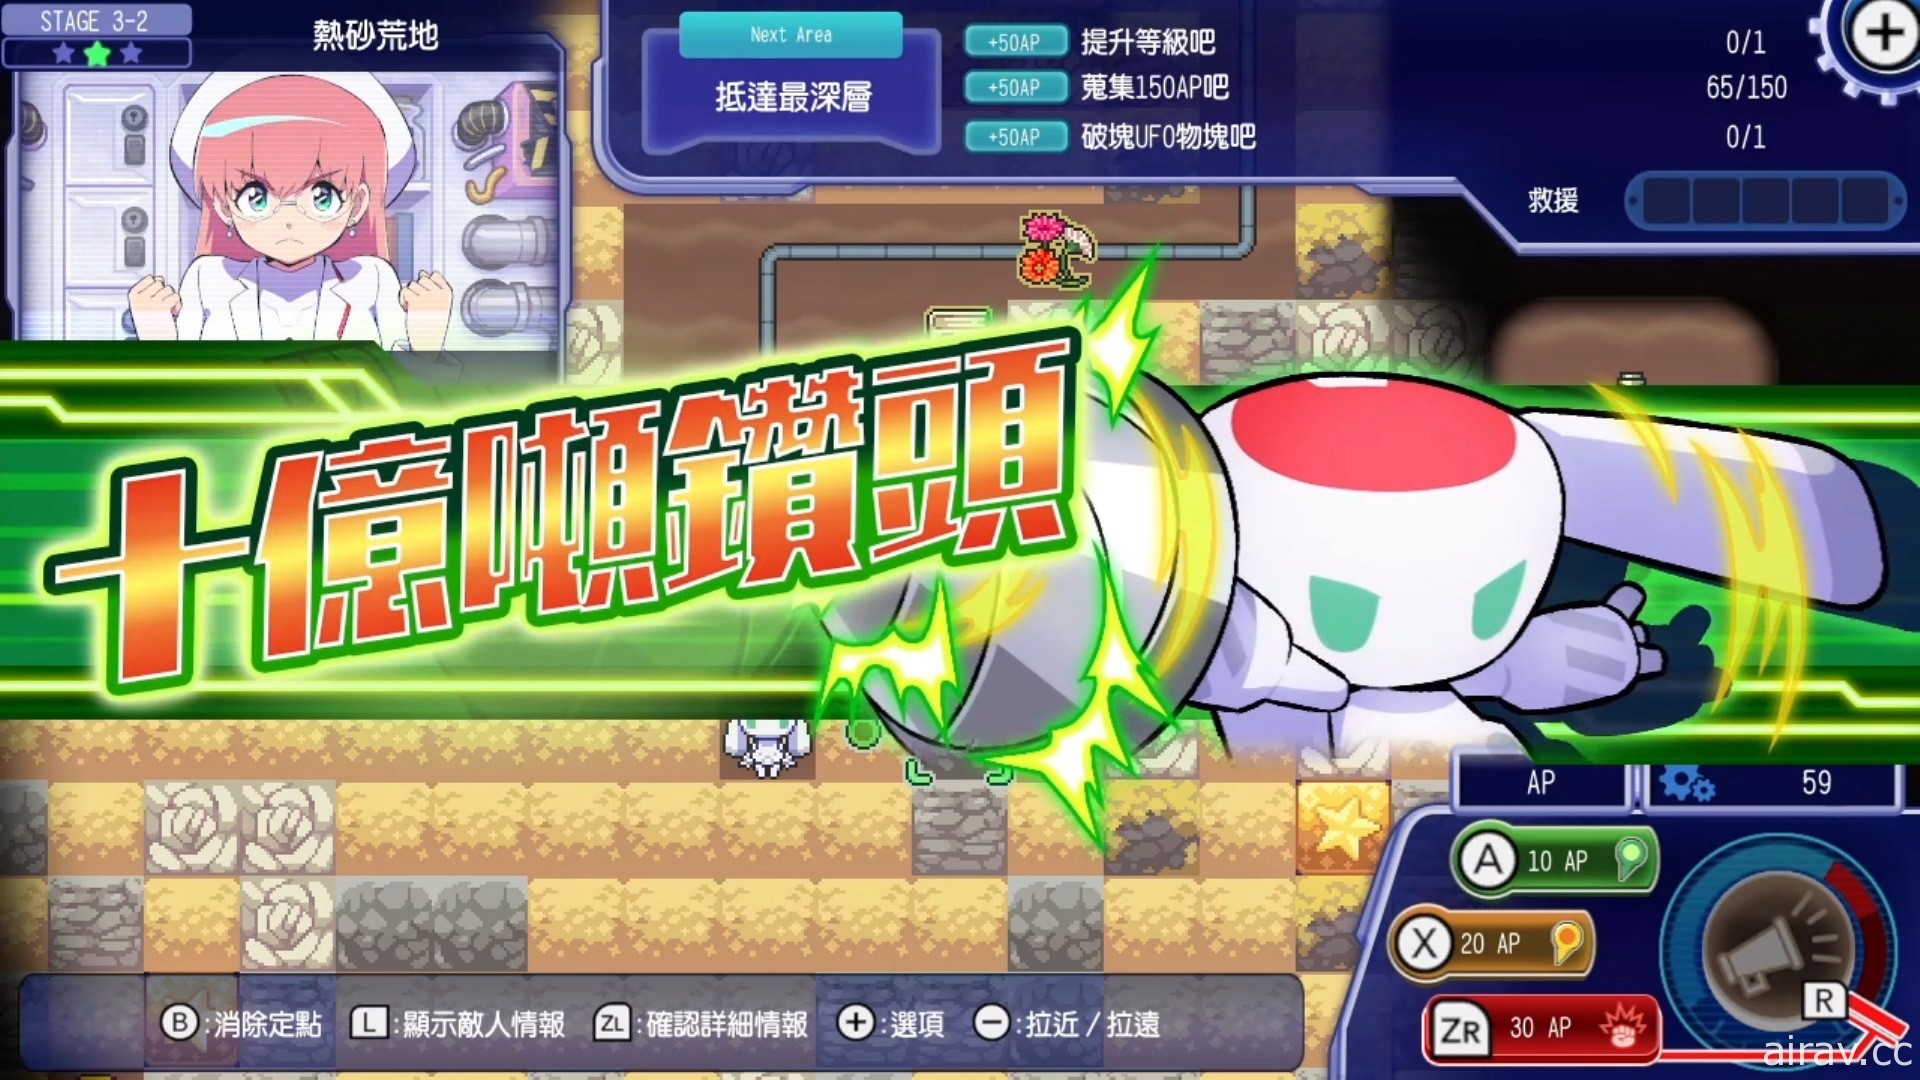 新感覺 Rougelike 挖掘戰略遊戲《地下潛者》中文版 6 月 30 日上市